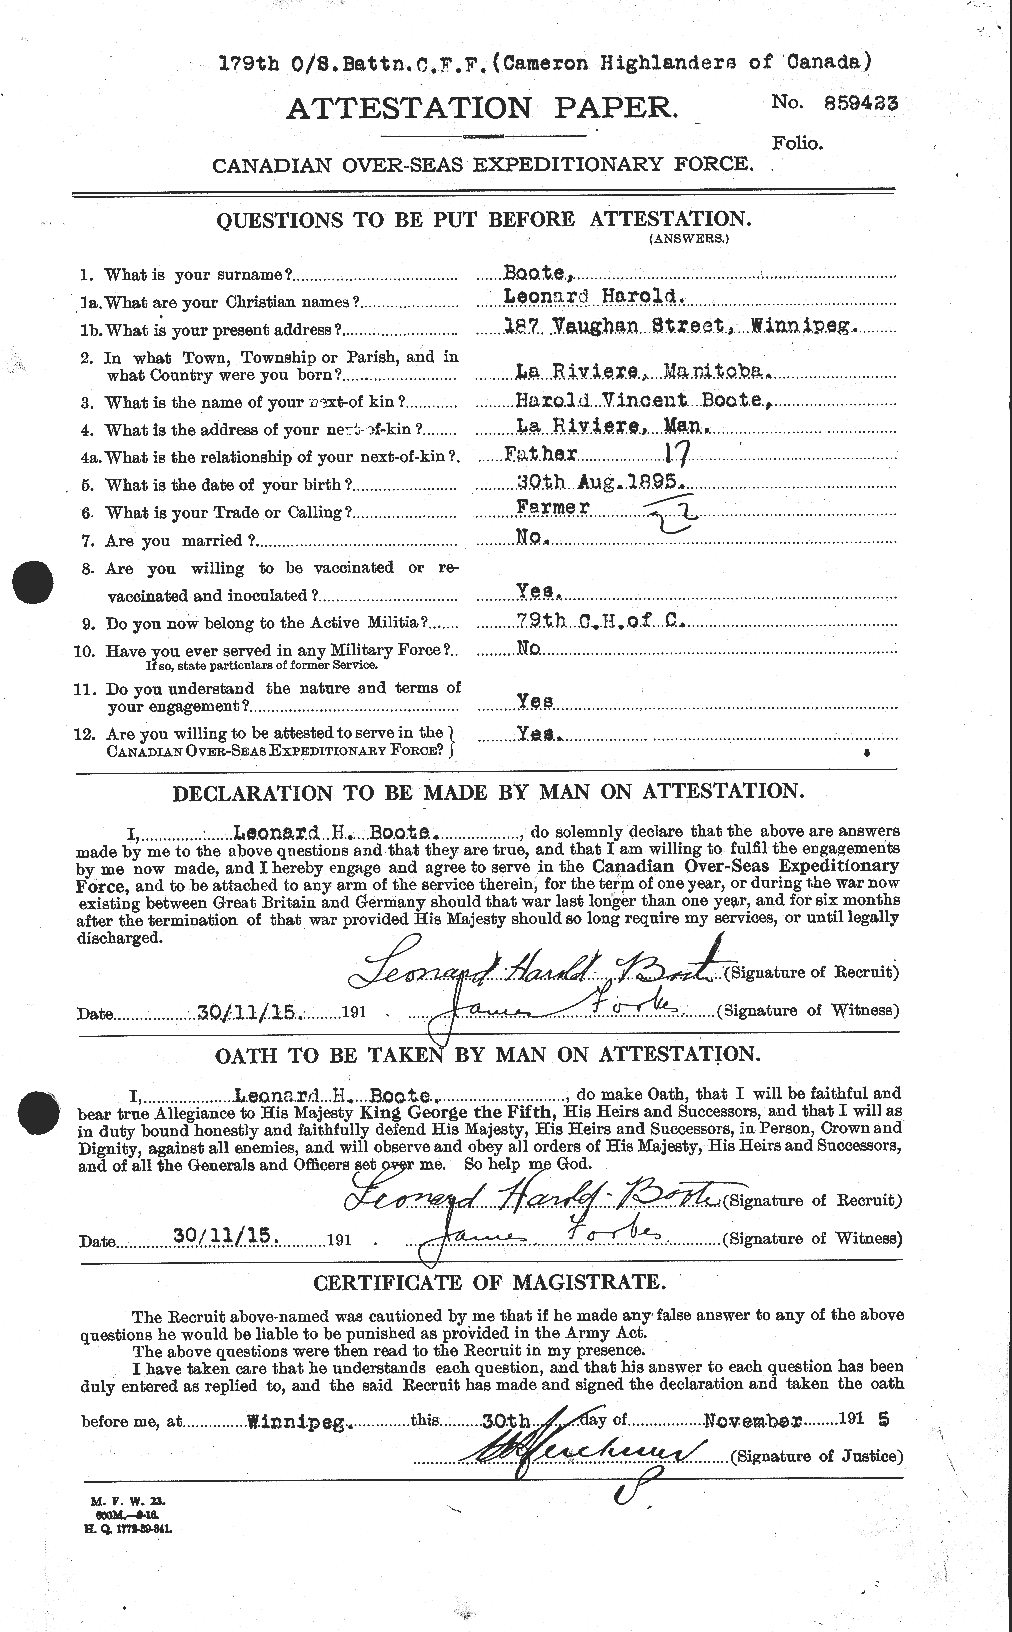 Dossiers du Personnel de la Première Guerre mondiale - CEC 251406a